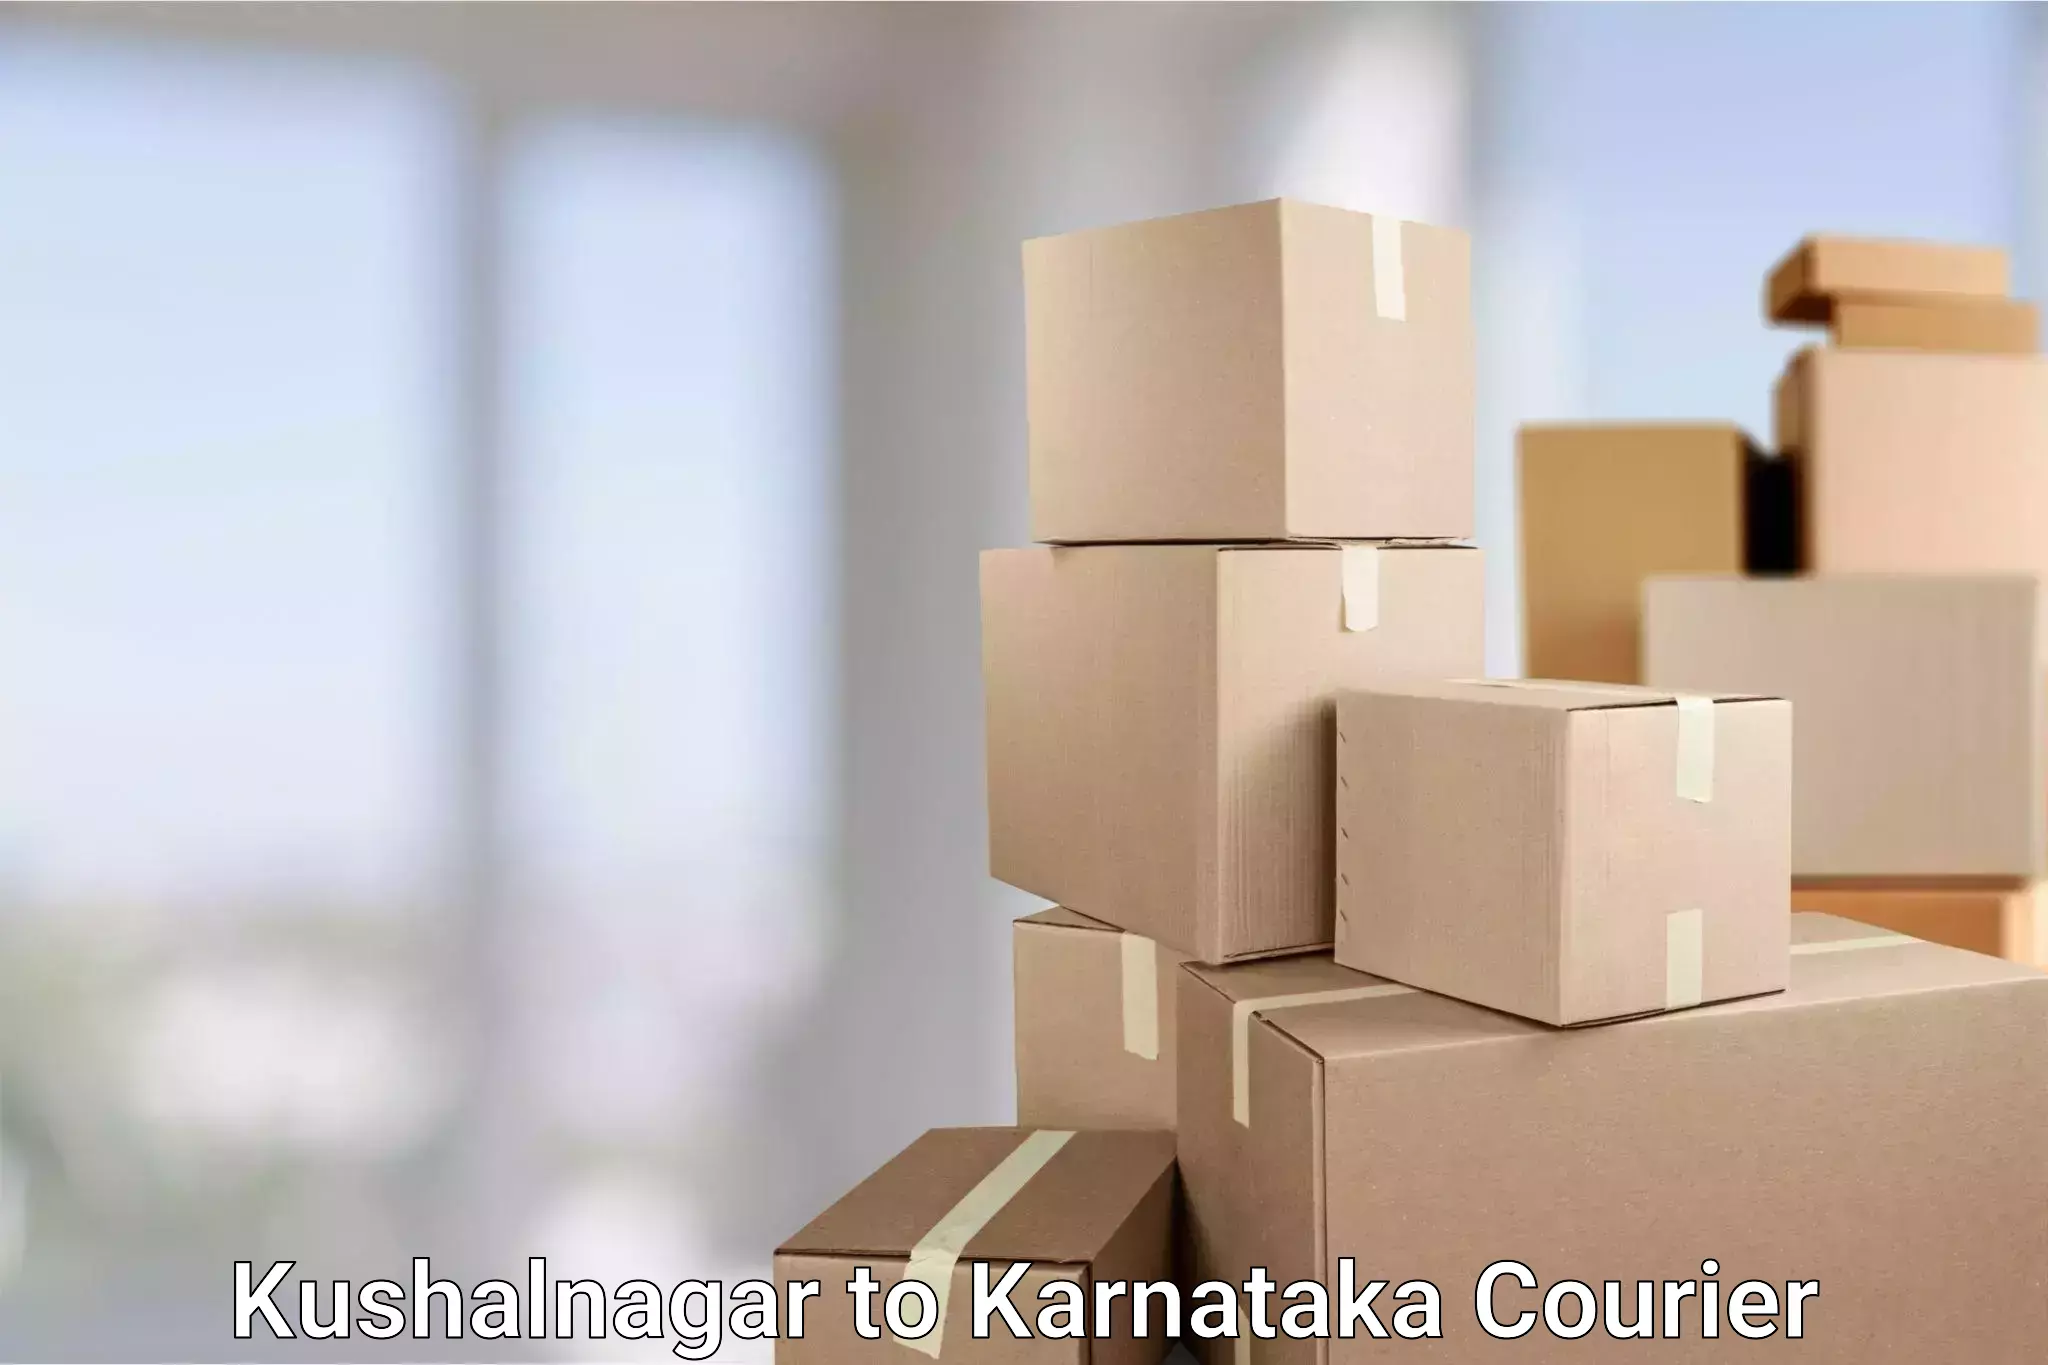 Pharmaceutical courier Kushalnagar to Yenepoya Mangalore